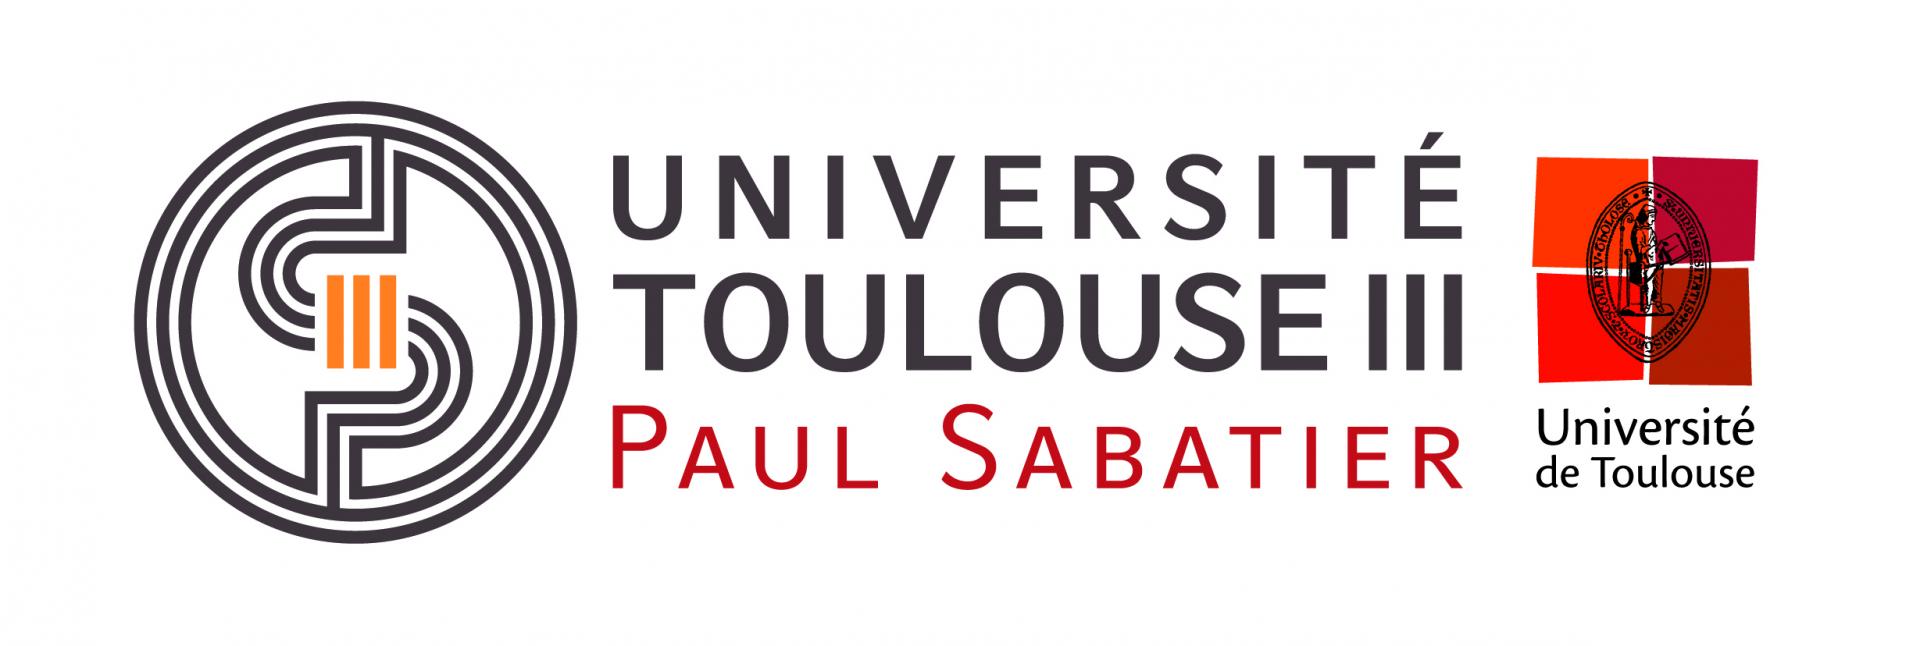 Logo ut3